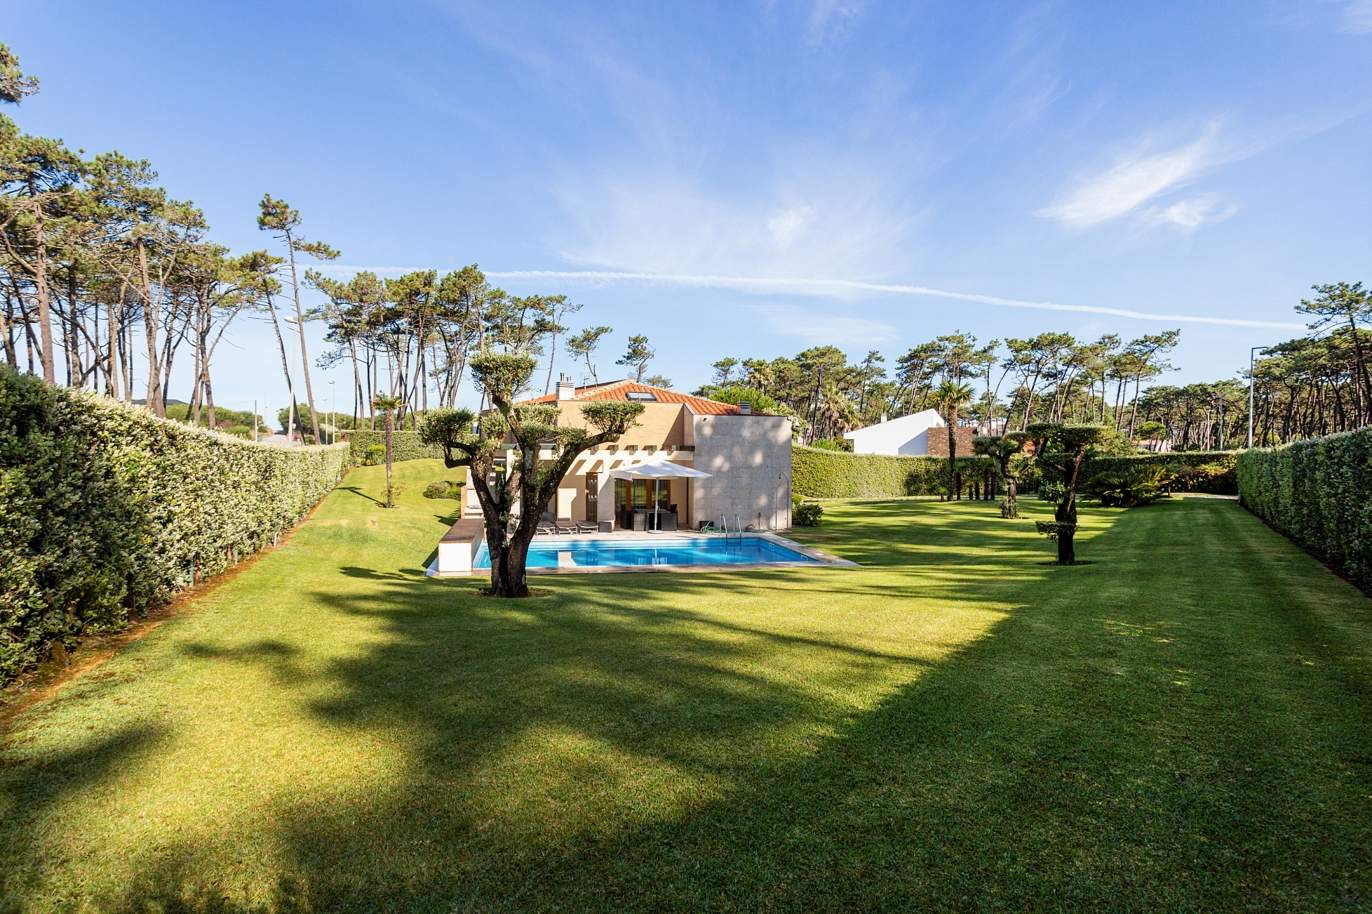 Vente: villa de luxe avec piscine et jardin, près de la plage d